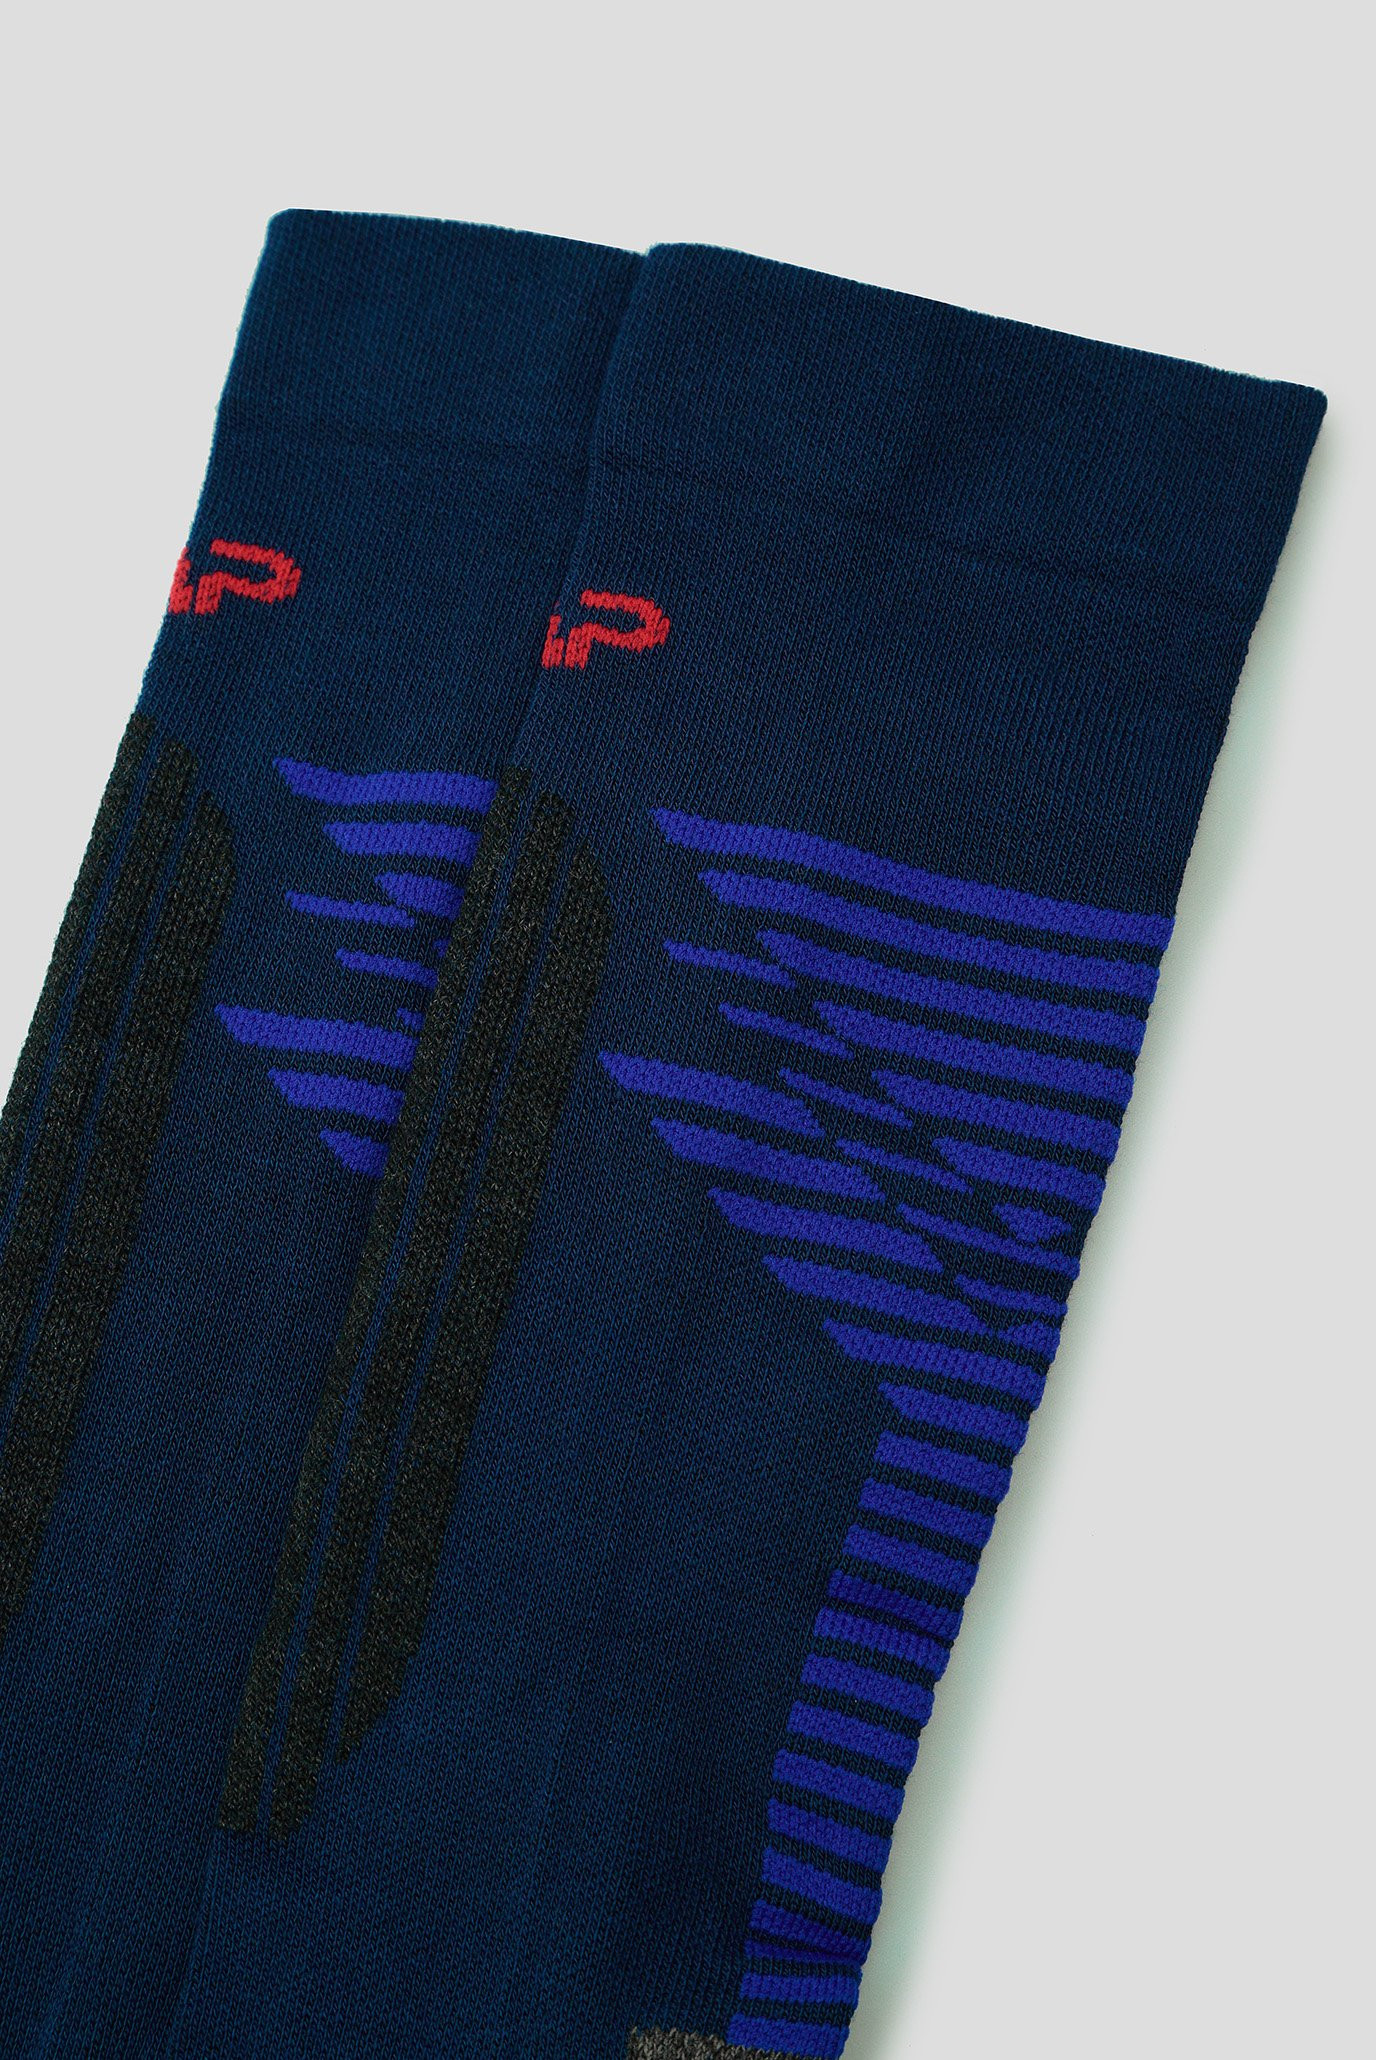 Шкарпетки лижні CMP SKI SOCK LENPUR 31I4857-48NH